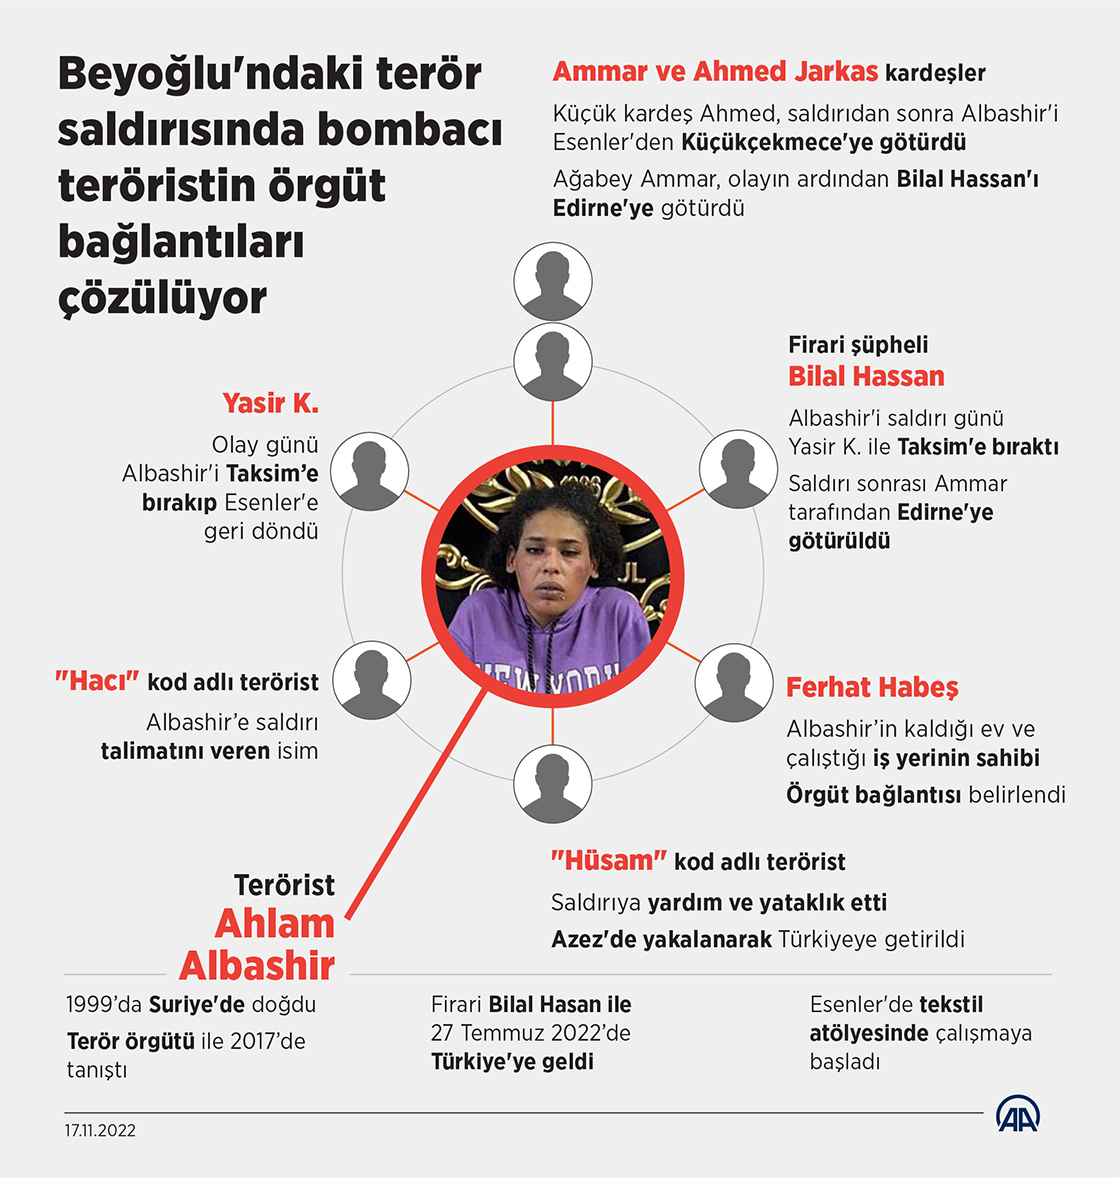 Beyoğlu'ndaki terör saldırısında bombacı teröristin örgüt bağlantıları çözülüyor